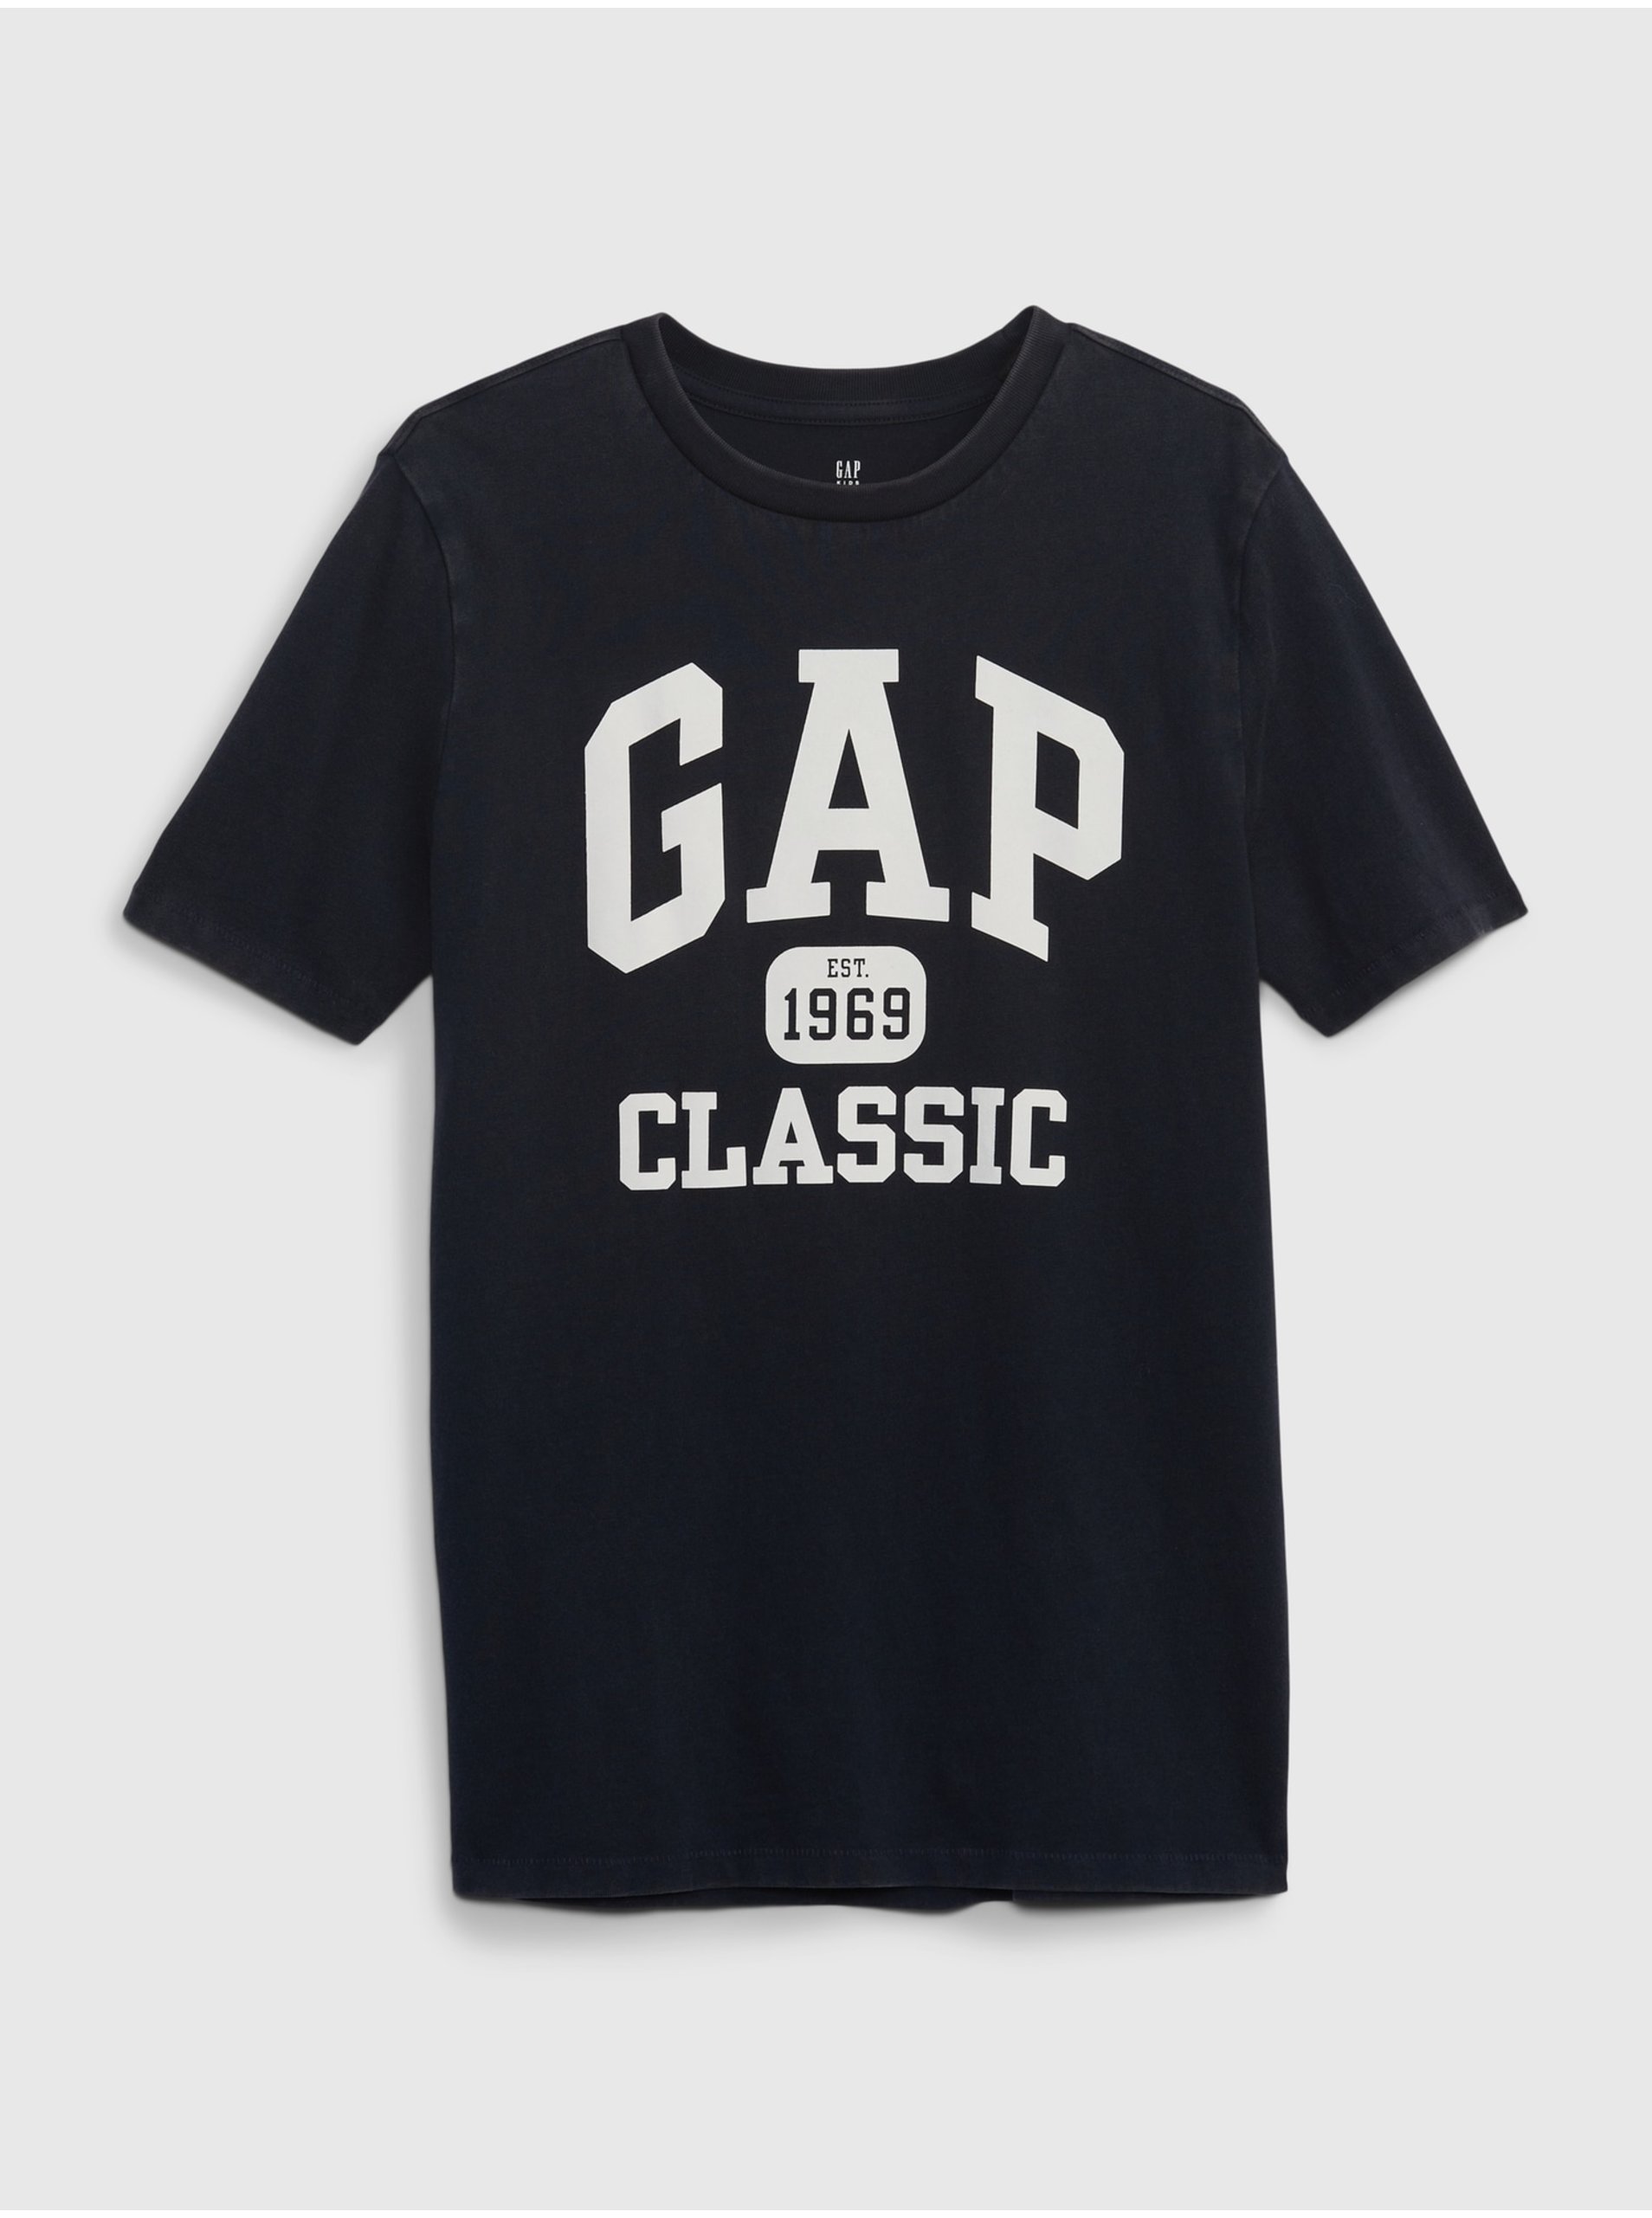 Lacno Tmavomodré chlapčenské tričko organic s logom GAP